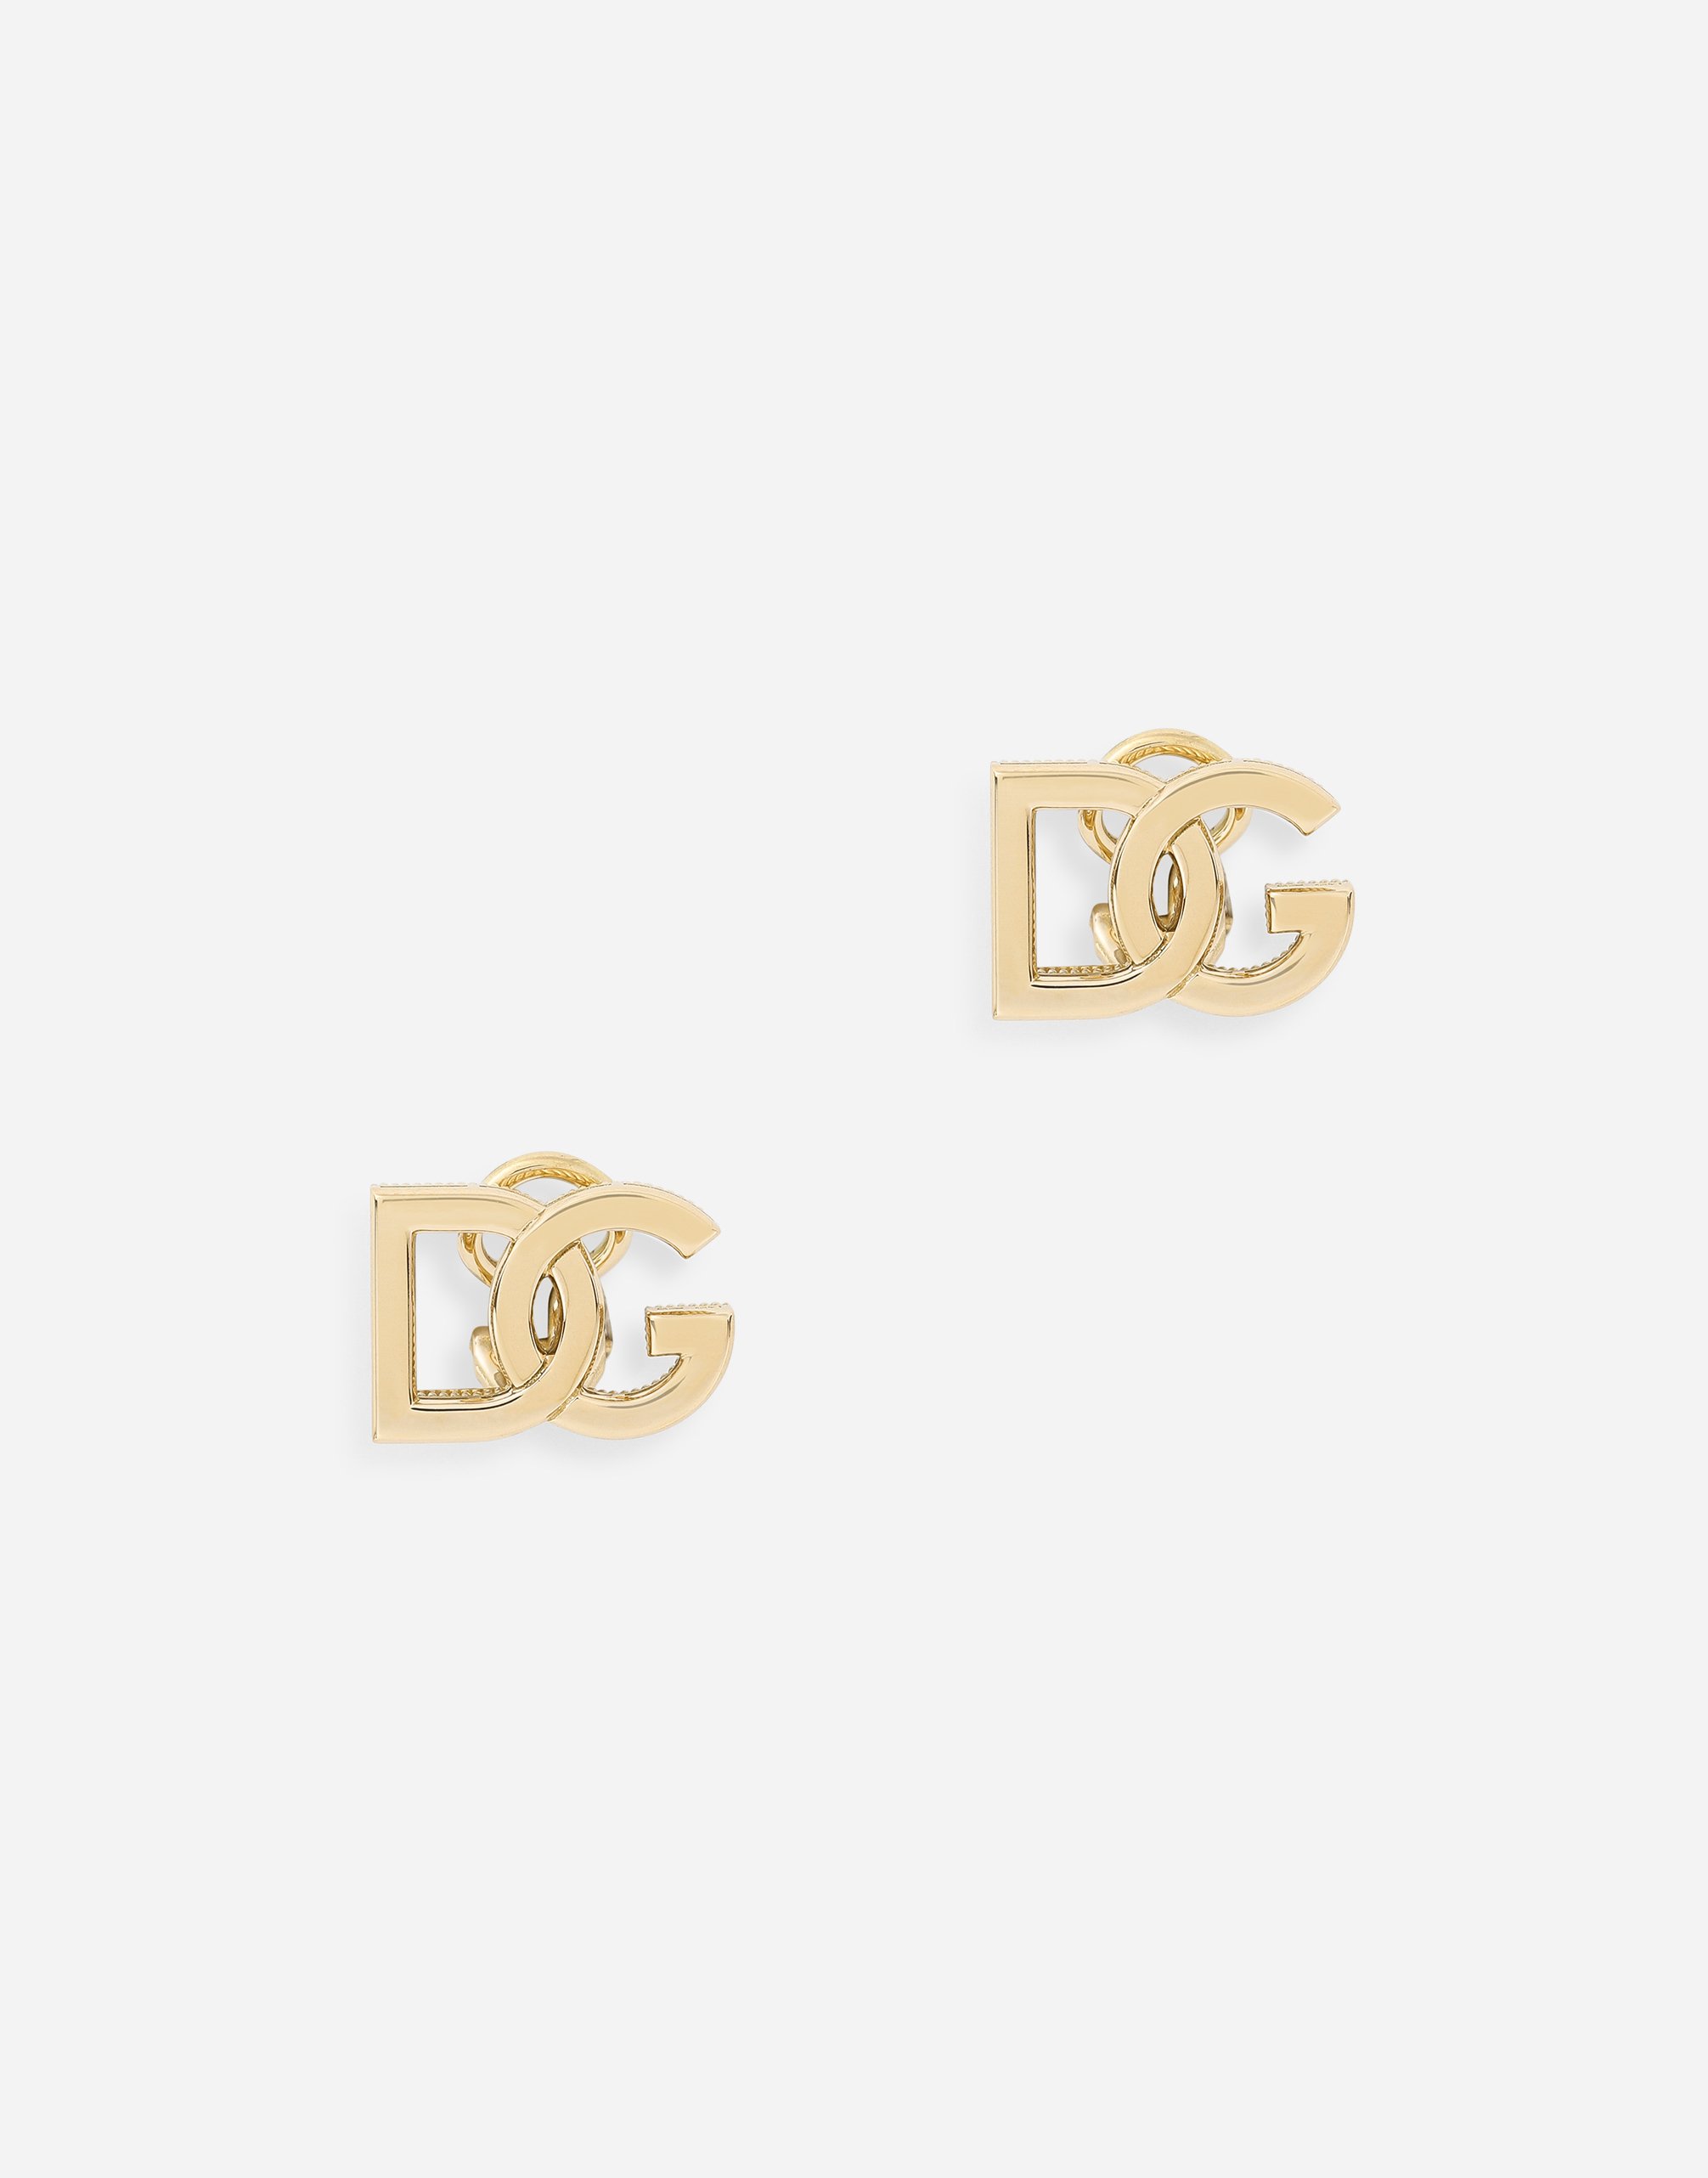 Dolce & Gabbana Logo clip-on earrings in yellow 18kt gold